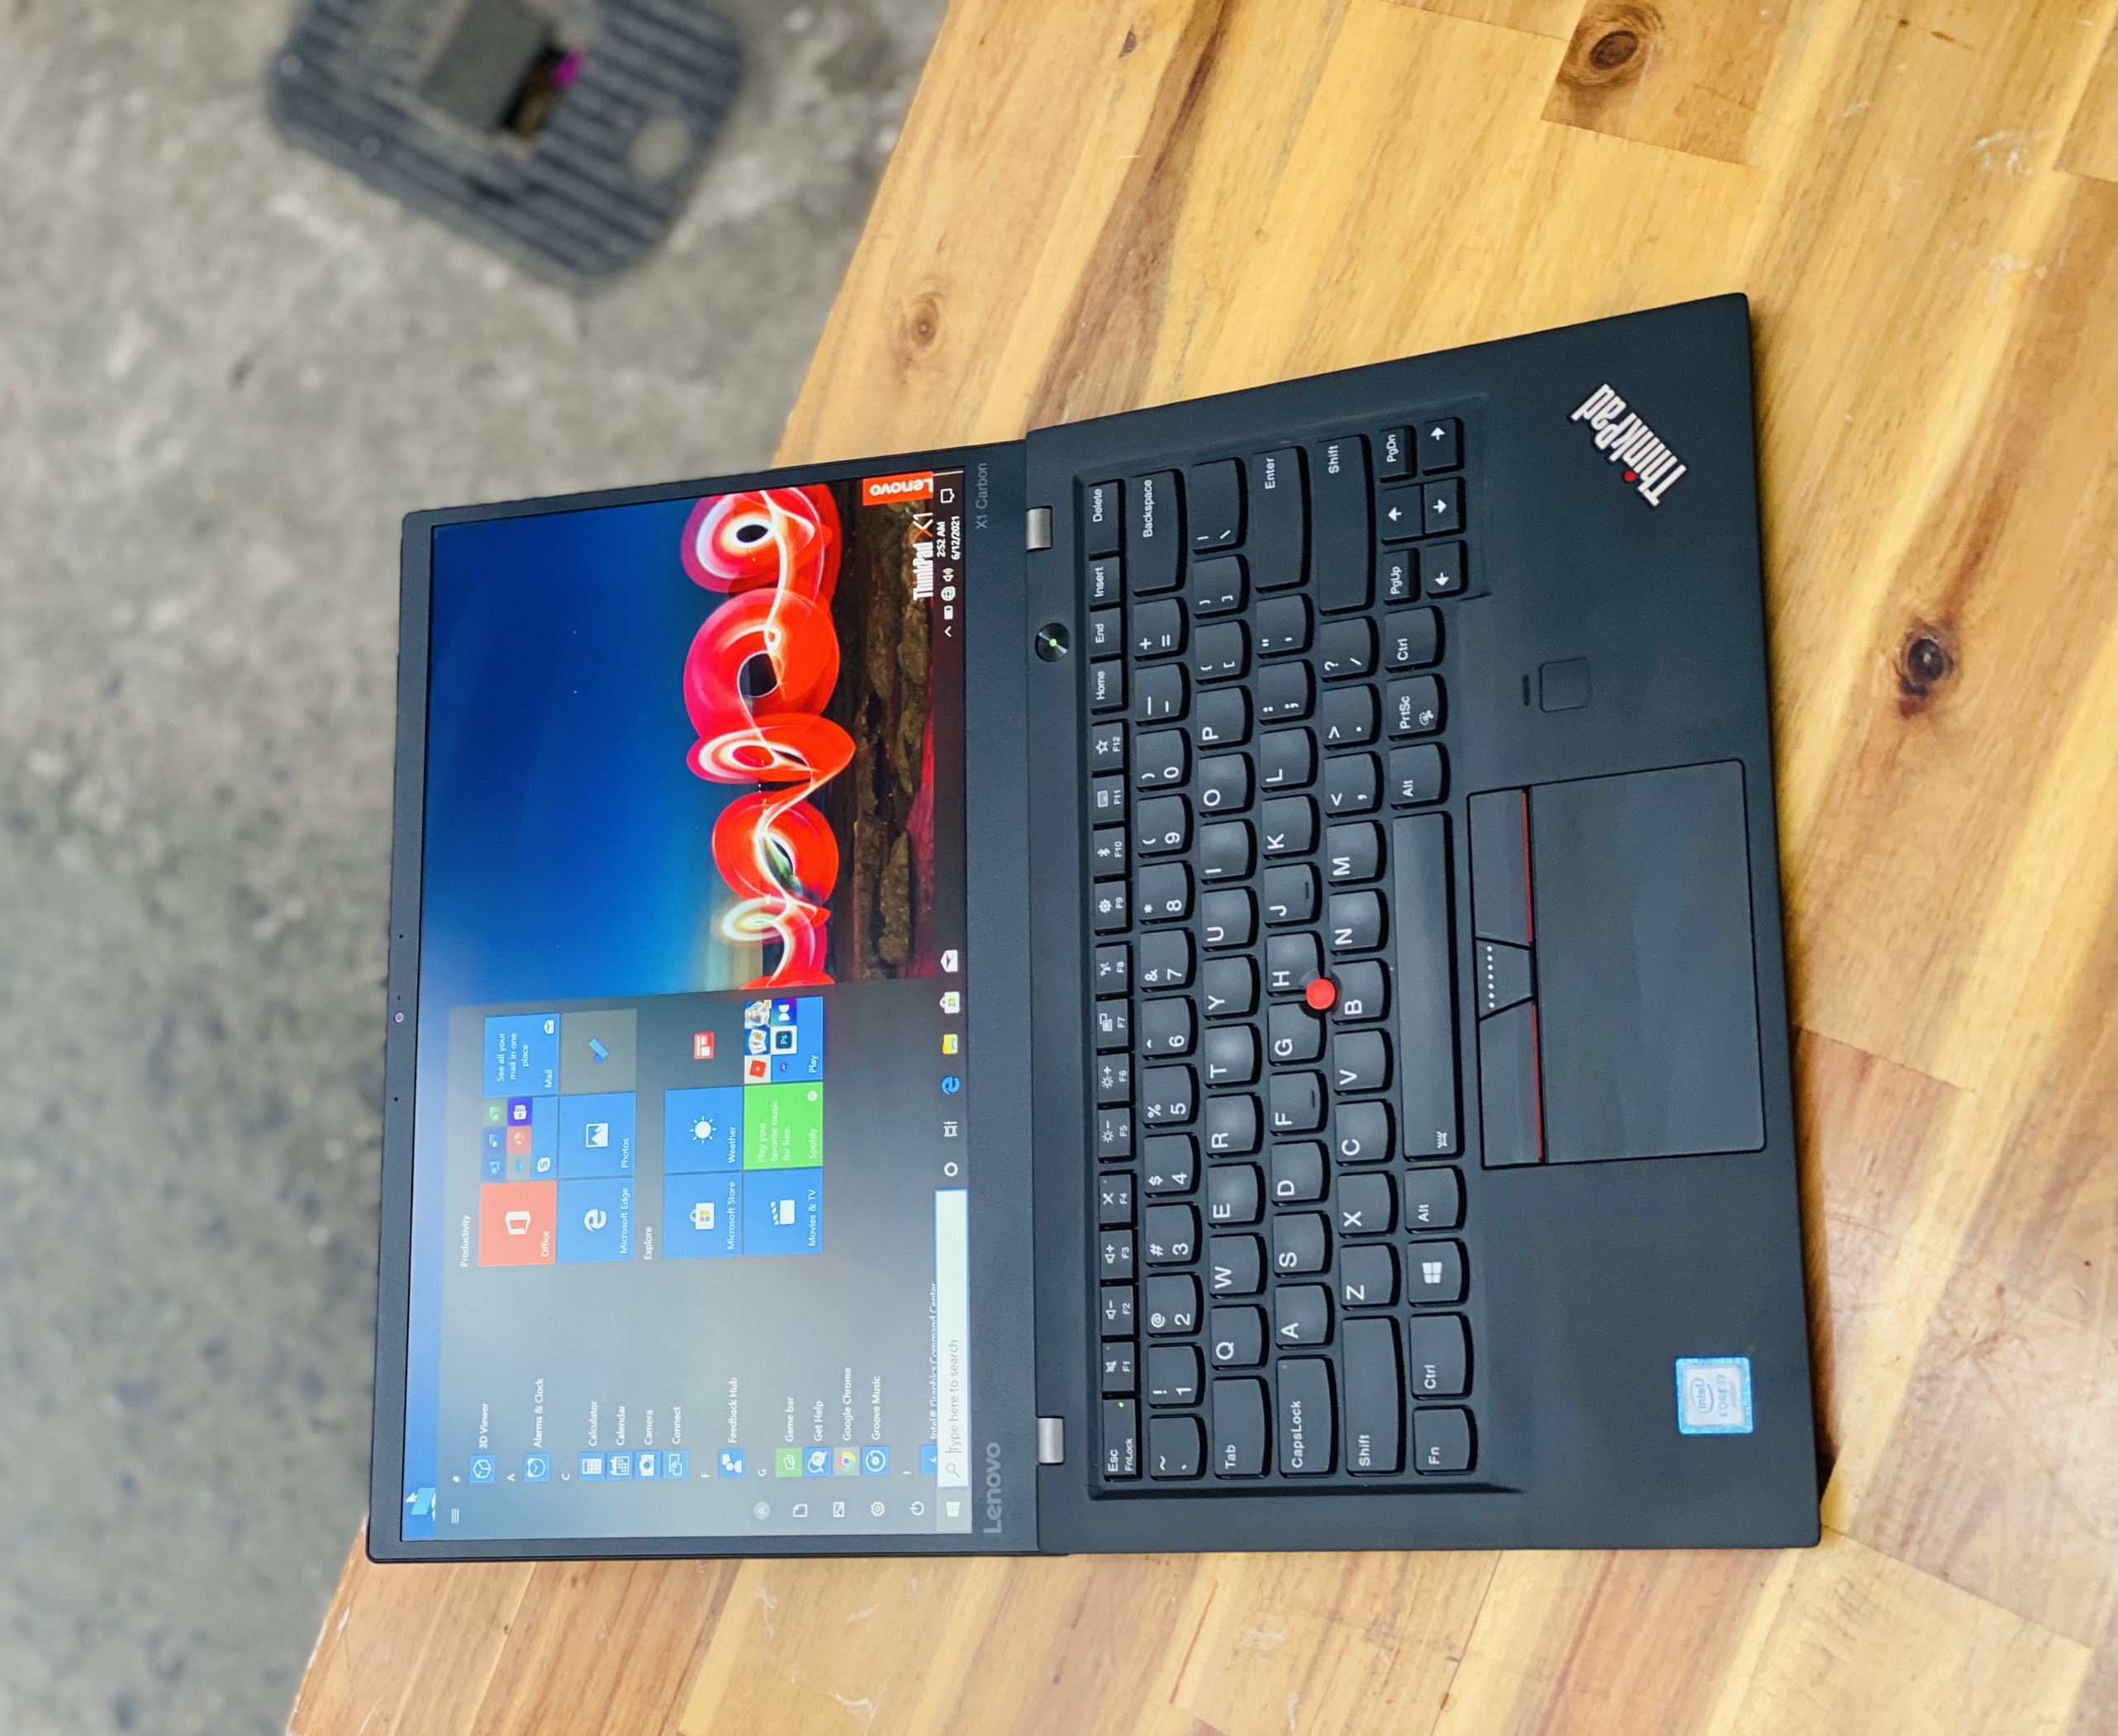 Laptop Lenovo Thinkpad X1 Carbon Gen 5/ i7 6500U/ 8G/ SSD256/ Viền Mỏng/ Full HD/ Chuẩn Doanh Nhân/ Giá rẻ1